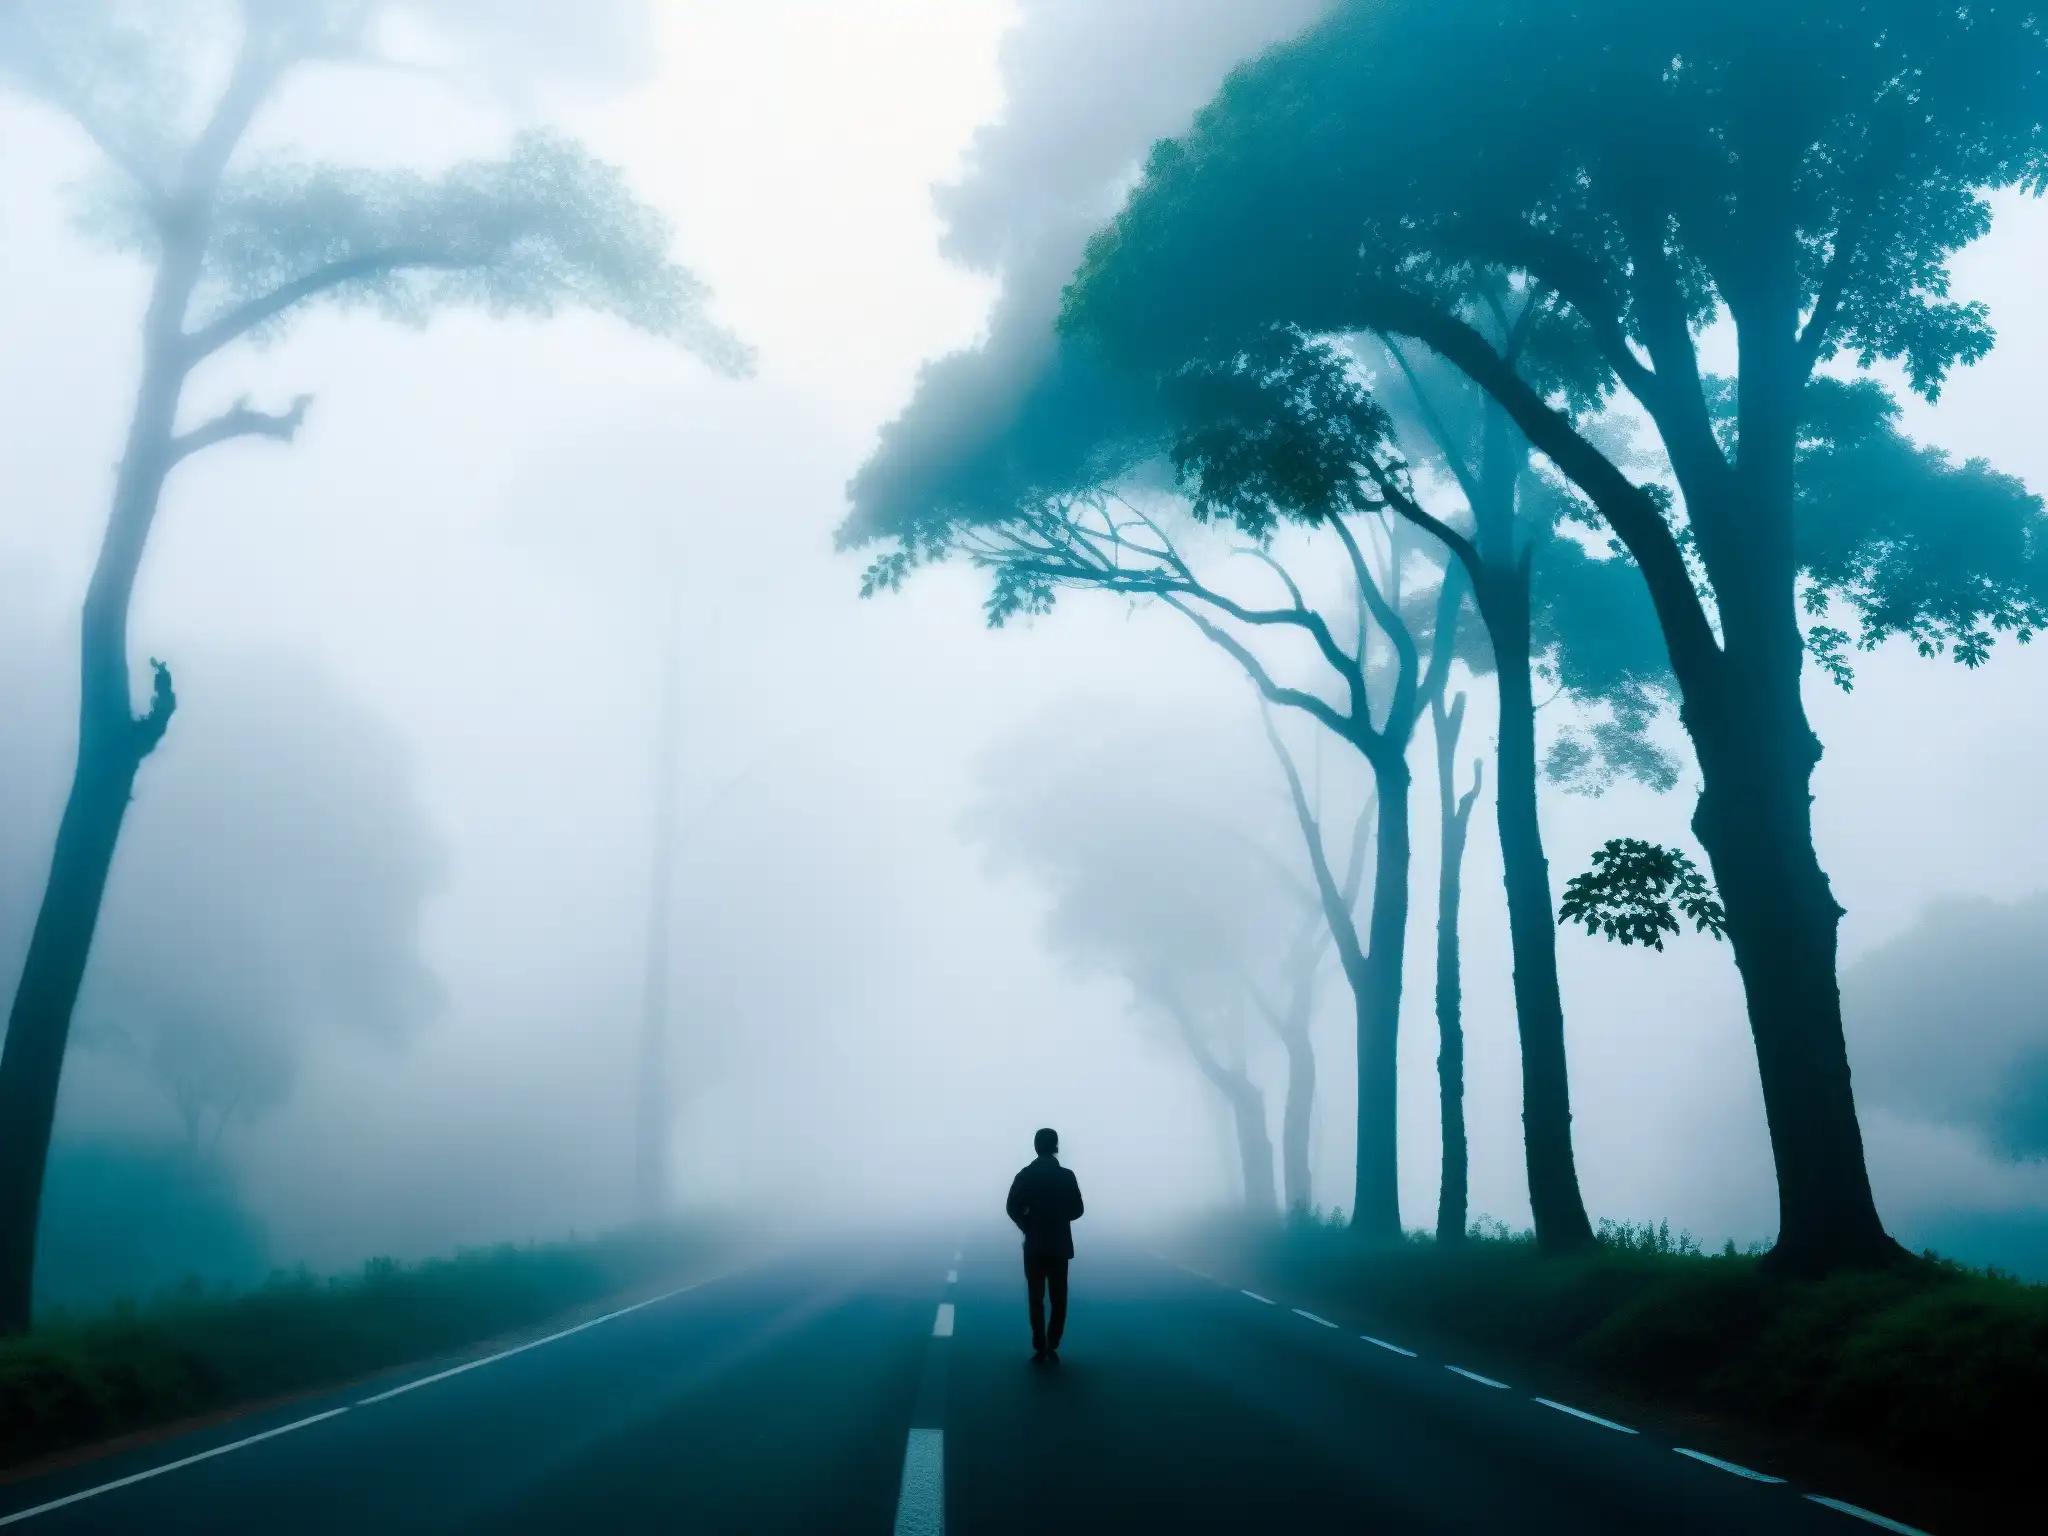 Un misterioso y denso banco de niebla cubre la Carretera de Jamshedpur, con la silueta de una figura solitaria en la distancia